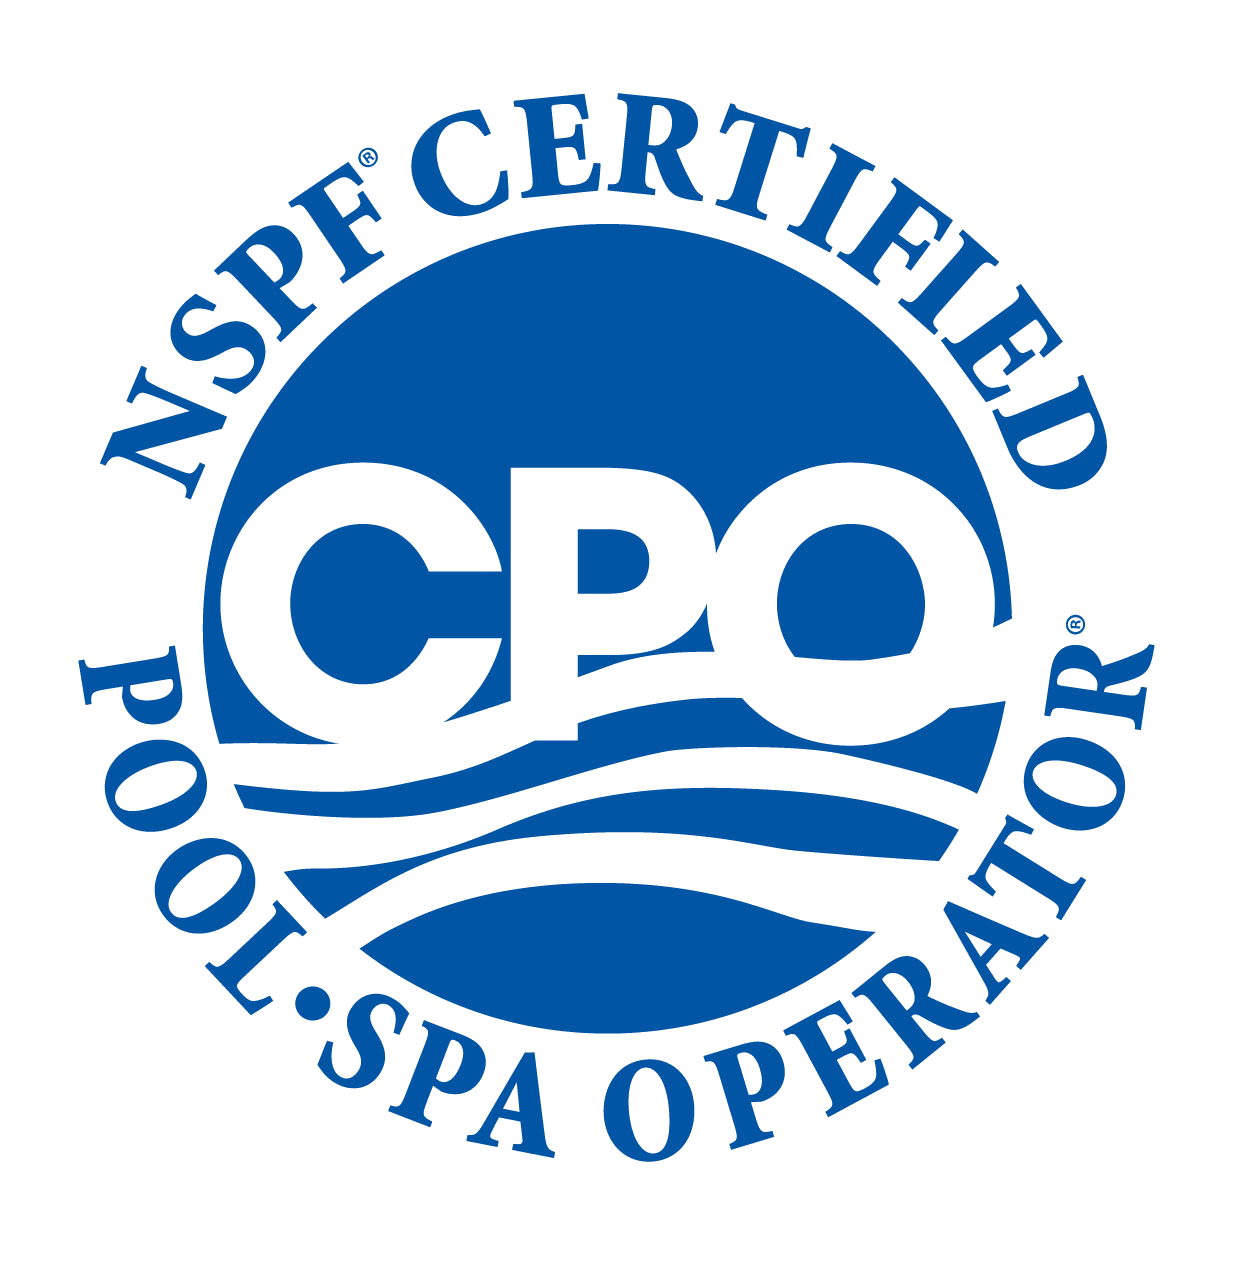 Certified Pool/Spa Operator Middle Georgia